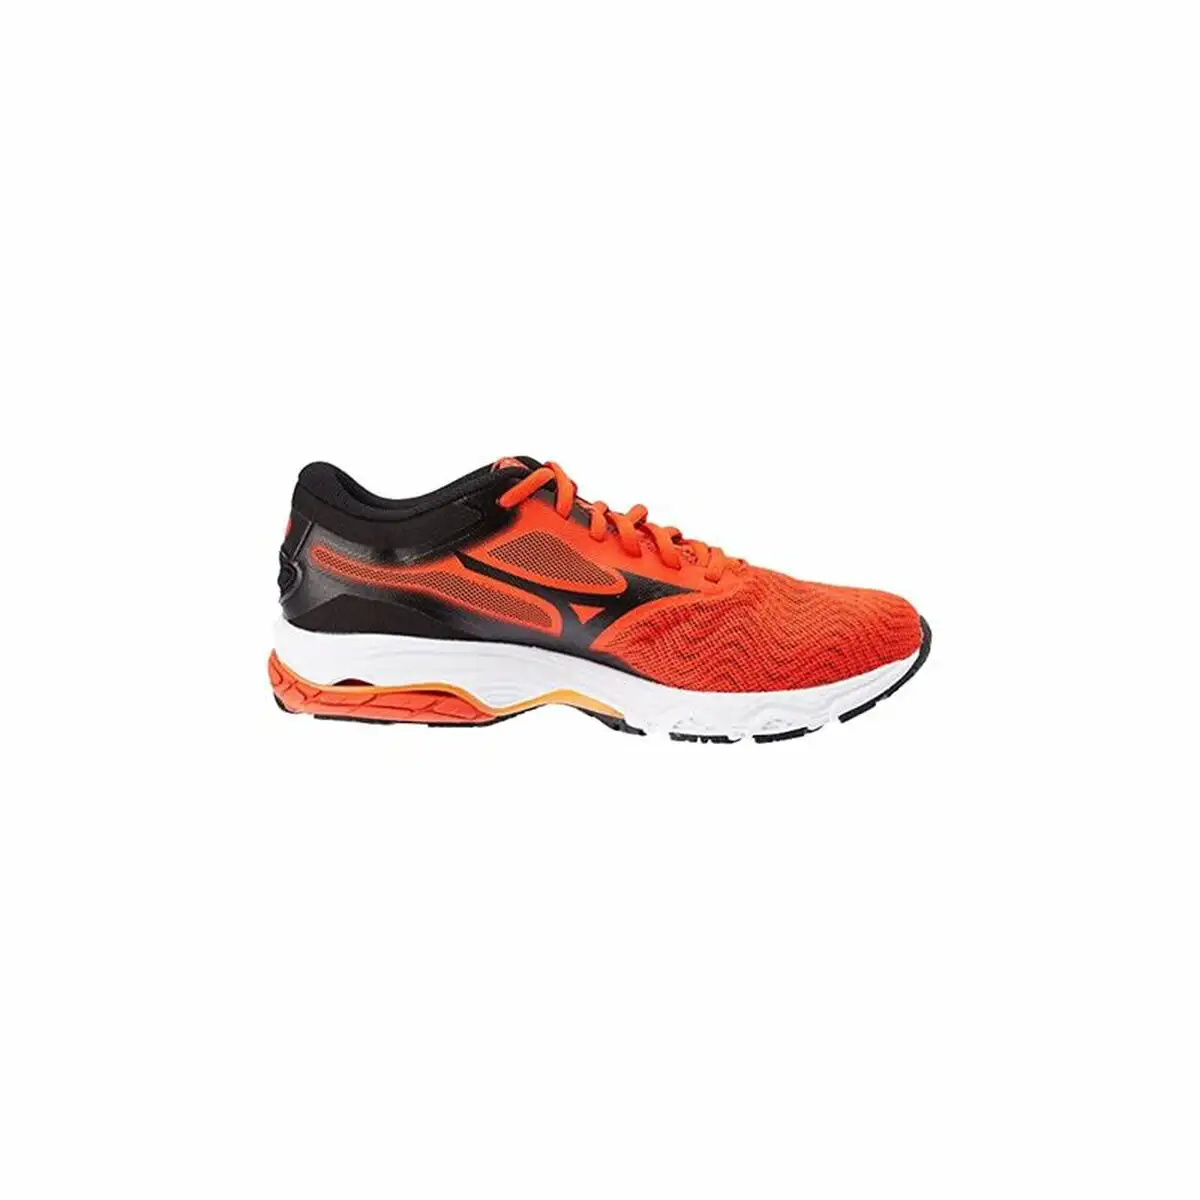 Chaussures de running pour adultes mizuno wave prodigy 4 orange homme_3005. DIAYTAR SENEGAL - L'Art de Choisir, l'Art de Vivre. Parcourez notre boutique en ligne et découvrez des produits qui transforment chaque choix en une expérience enrichissante.